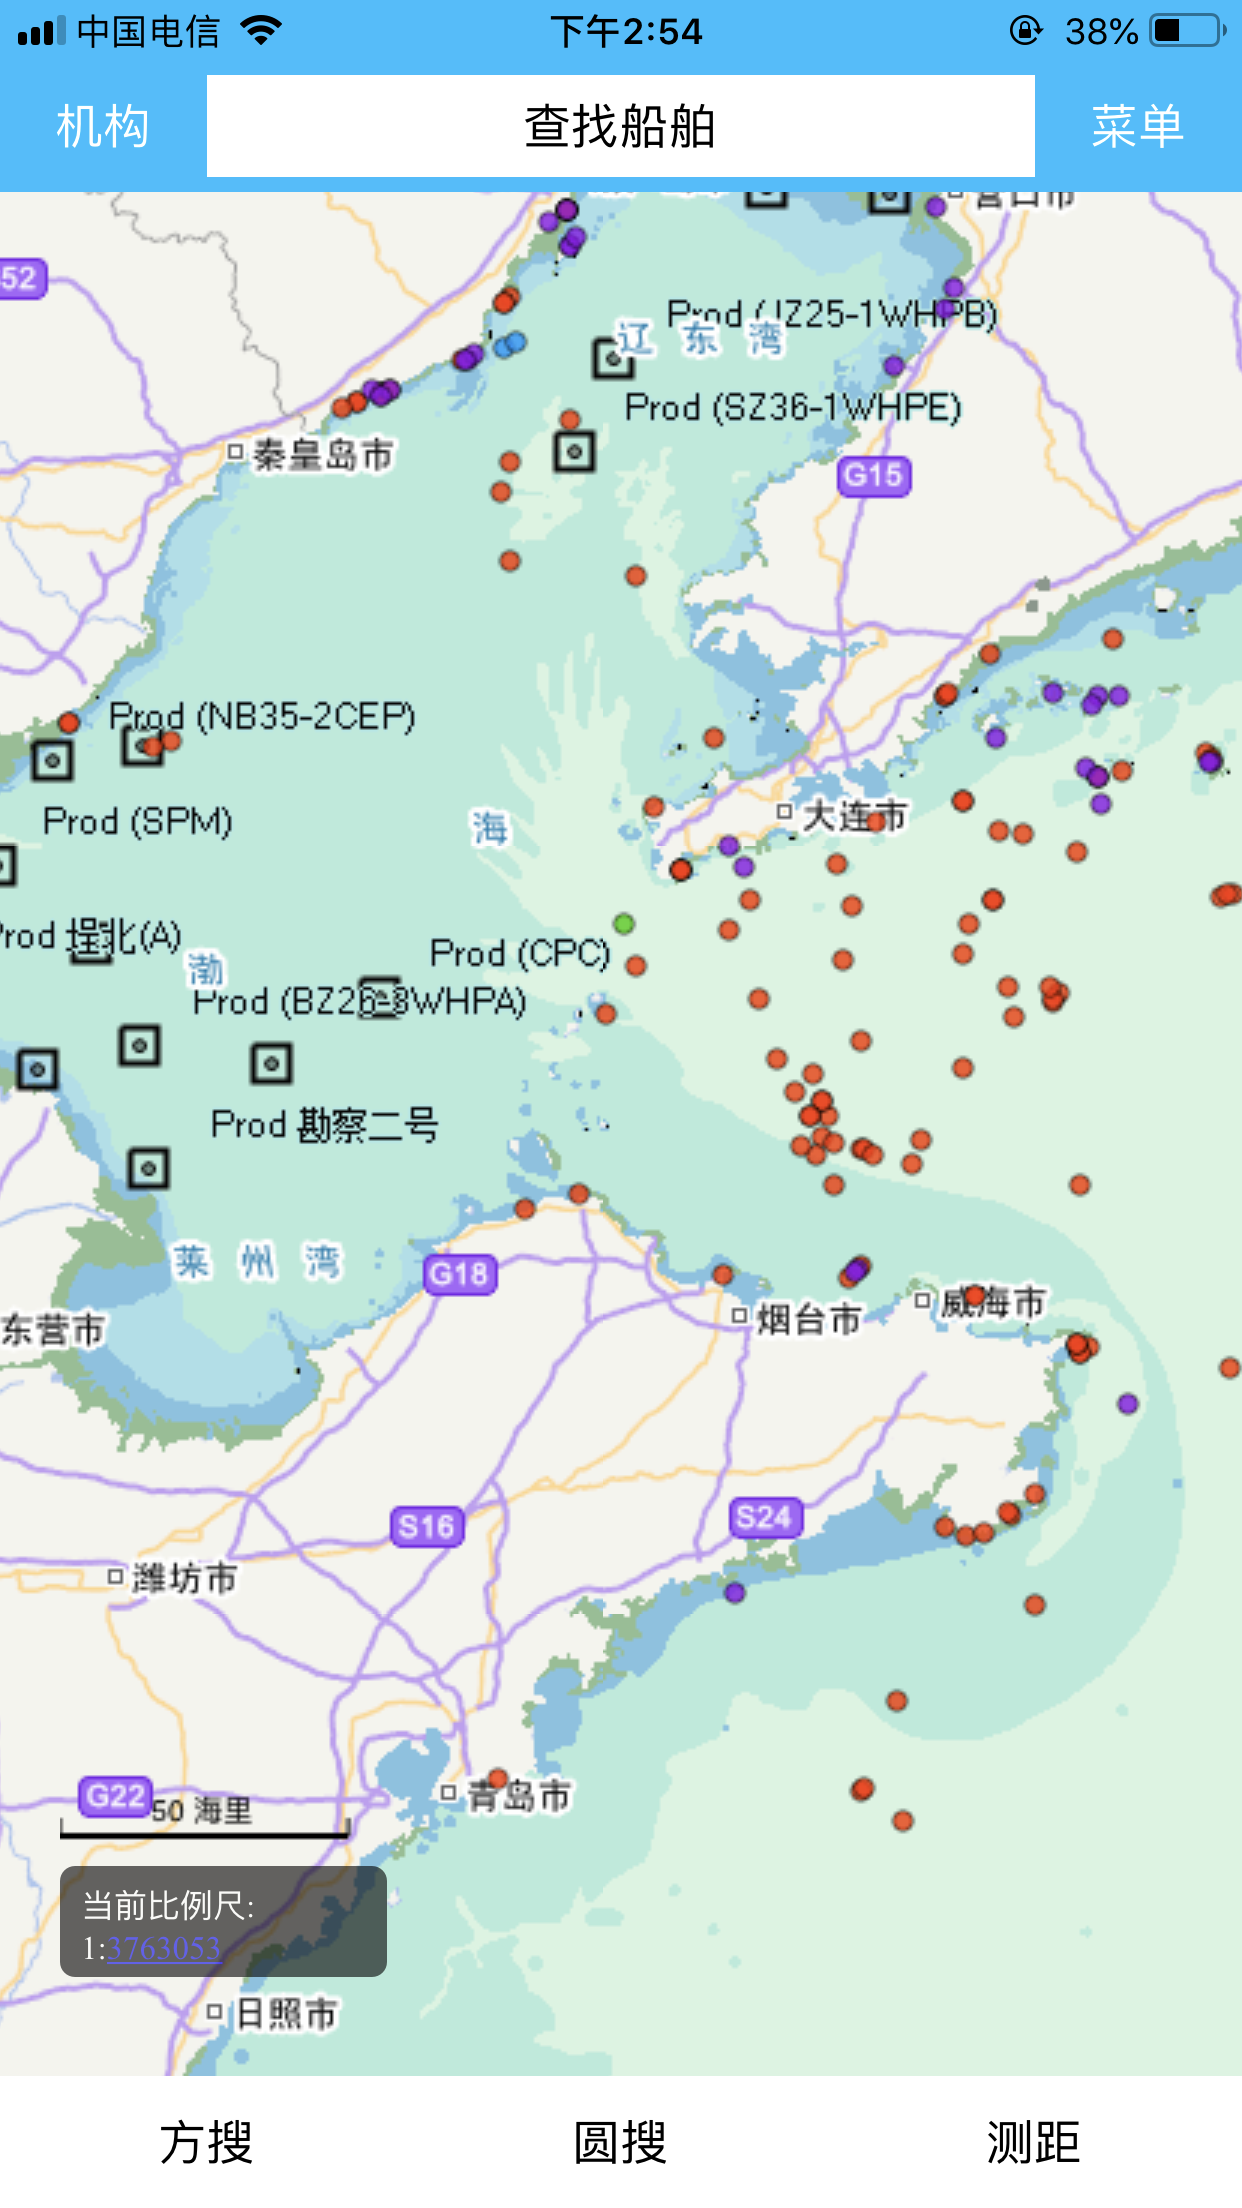 辽宁渔船渔港监控系统